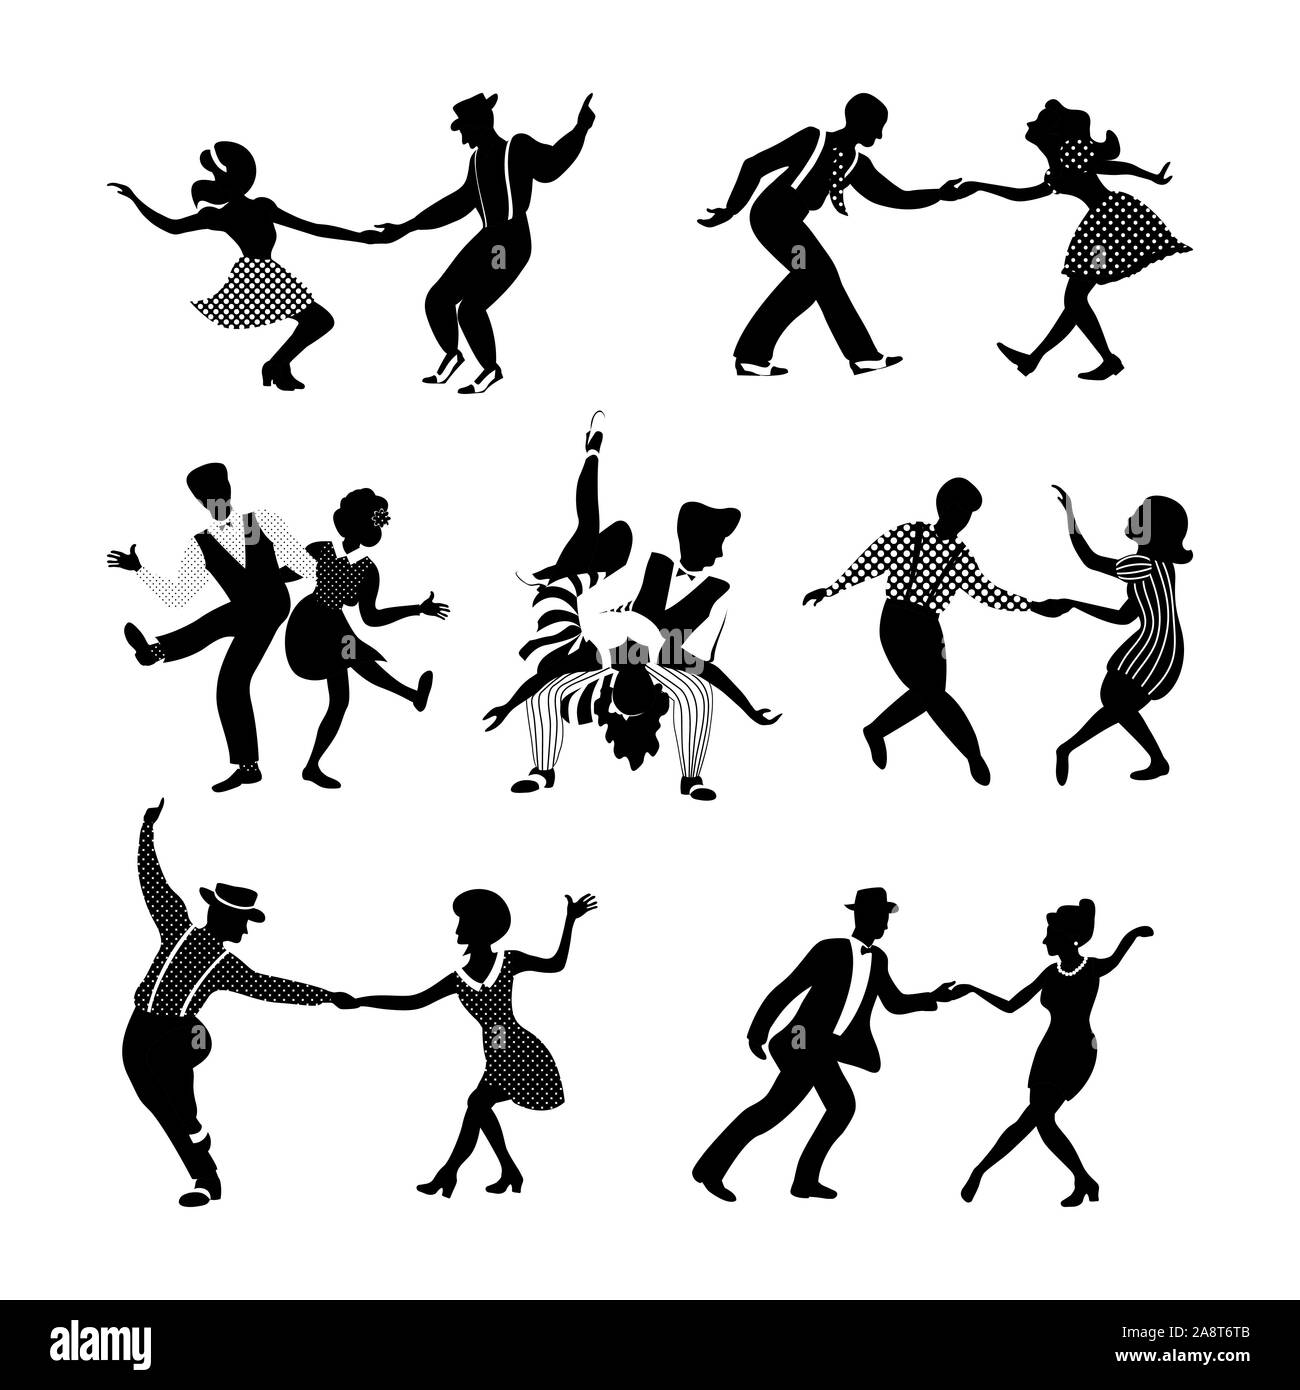 Rock'n Roll und Jazz tanzende Paare. Swing tanzen Silhouetten. Menschen in  den 40er und 50er Jahre Stil. Retro schwarz und weiß Vector Illustration  Stock-Vektorgrafik - Alamy